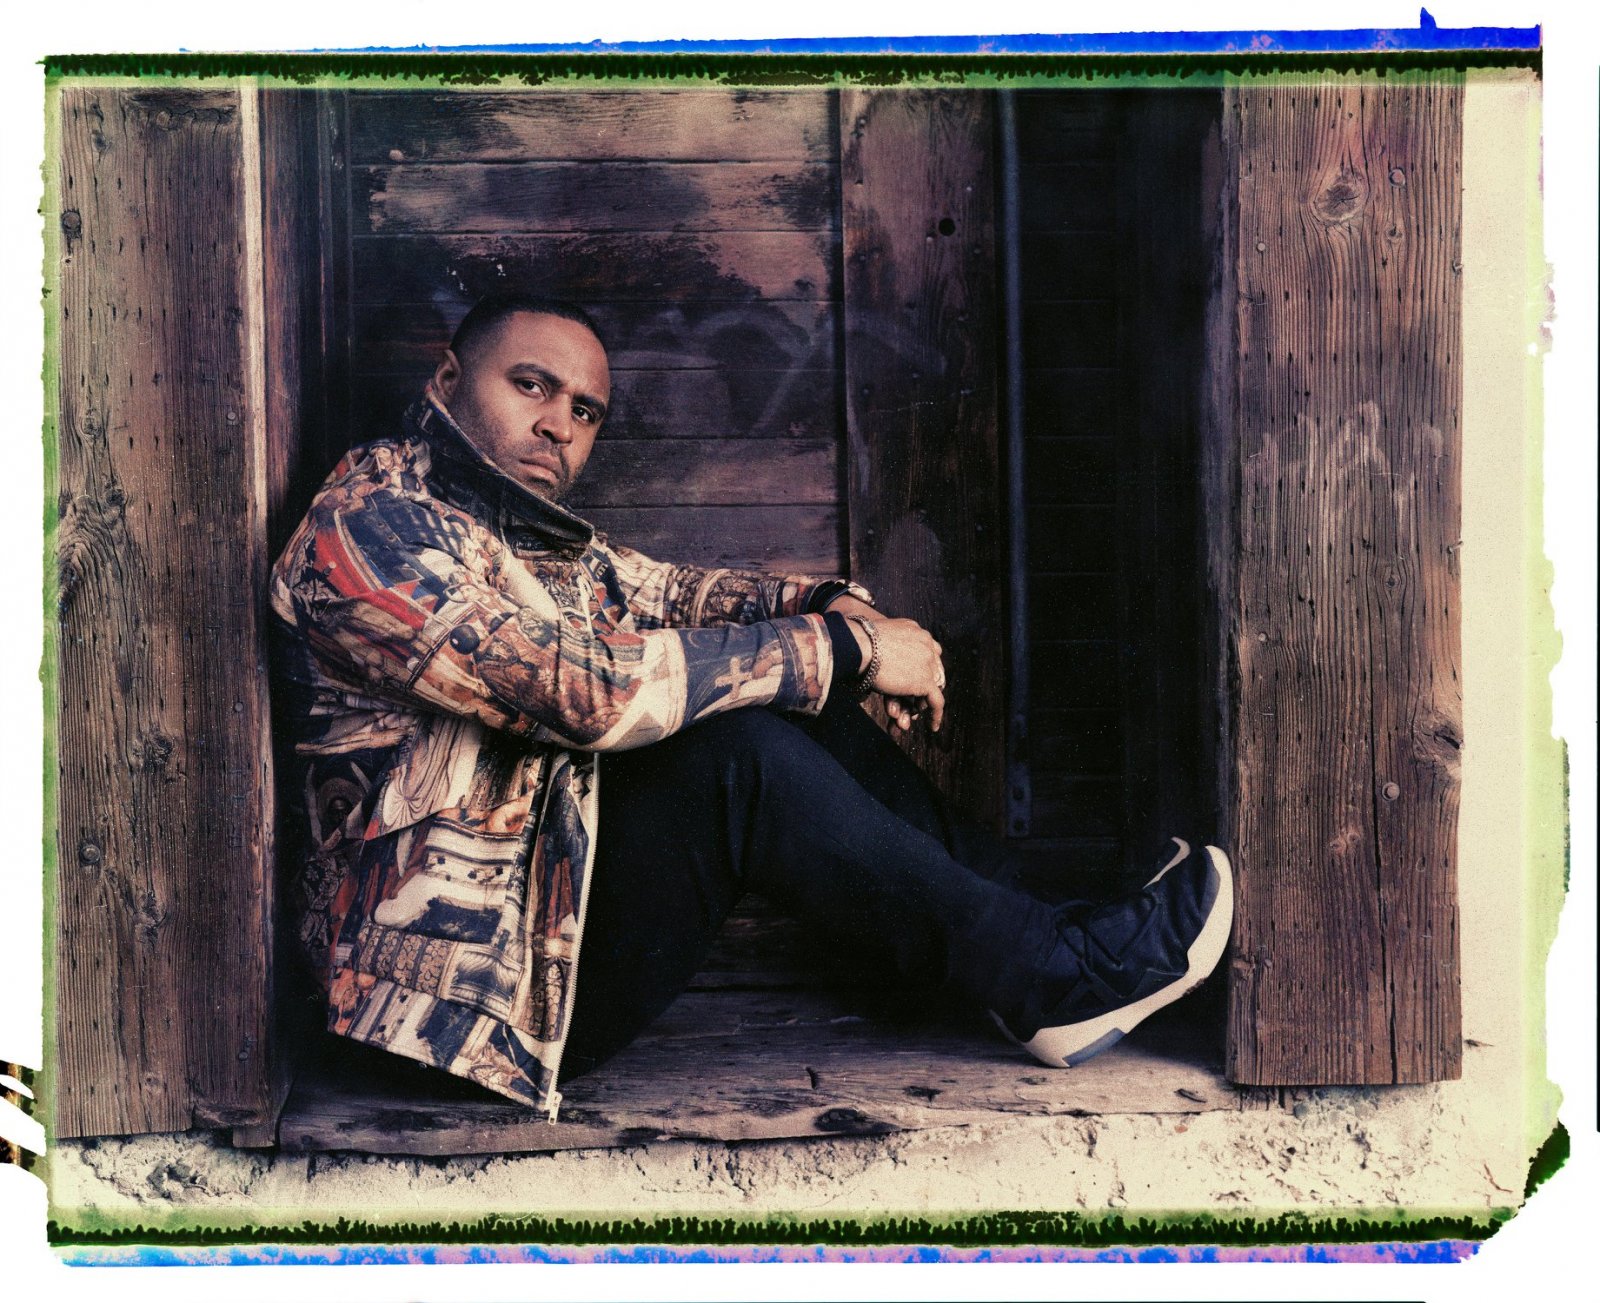 Kendrick Scott Oracle su 'ArkivJazz' parla di "A Wall Becomes a Bridge", il nuovo album Blue Note